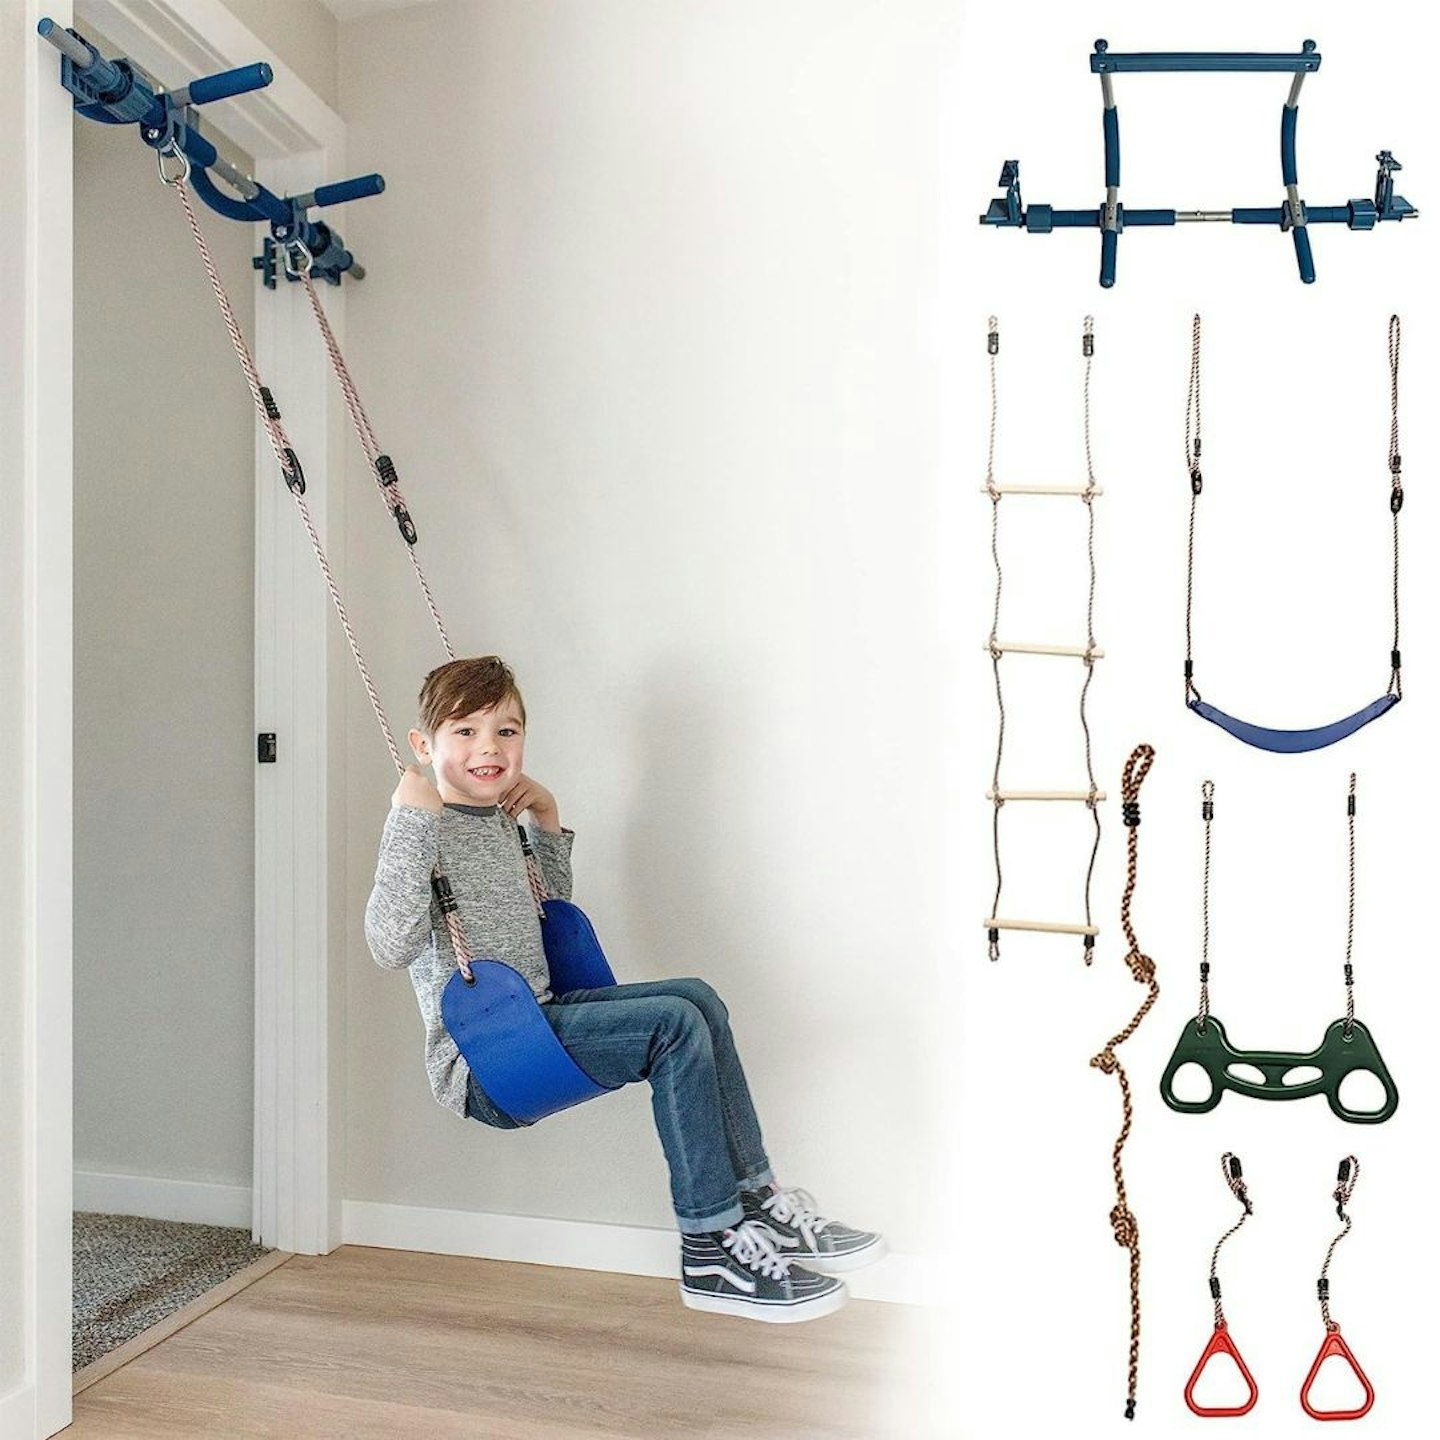 The Best Indoor Climbing Toys For Kids: Gym1 6-Piece Indoor Doorway Gym Set